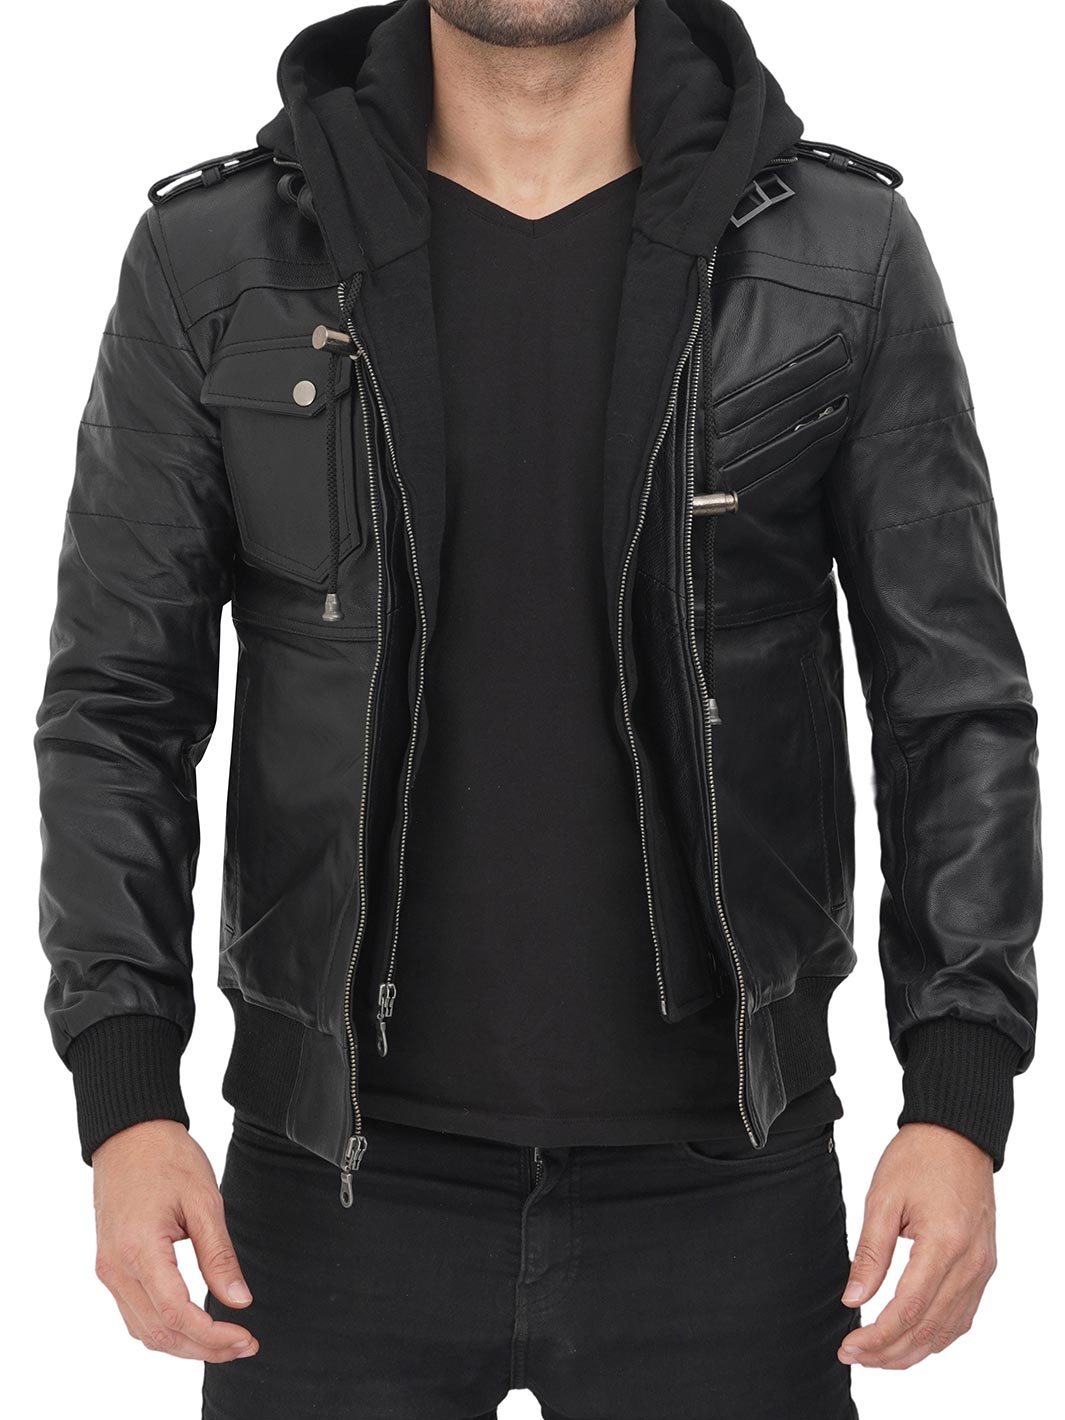 leather jacket with hood